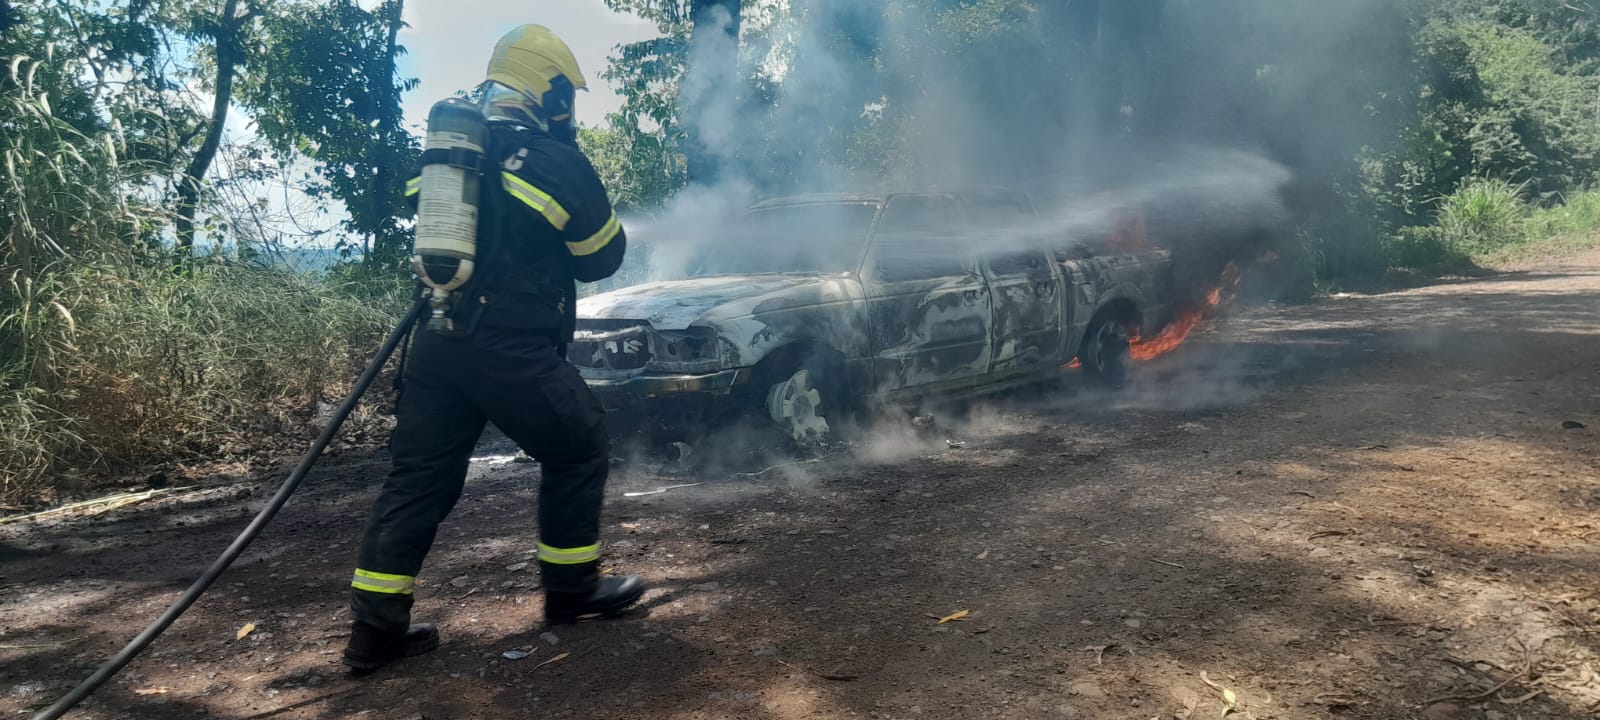 Incêndio destrói caminhoneta em Cordilheira Alta